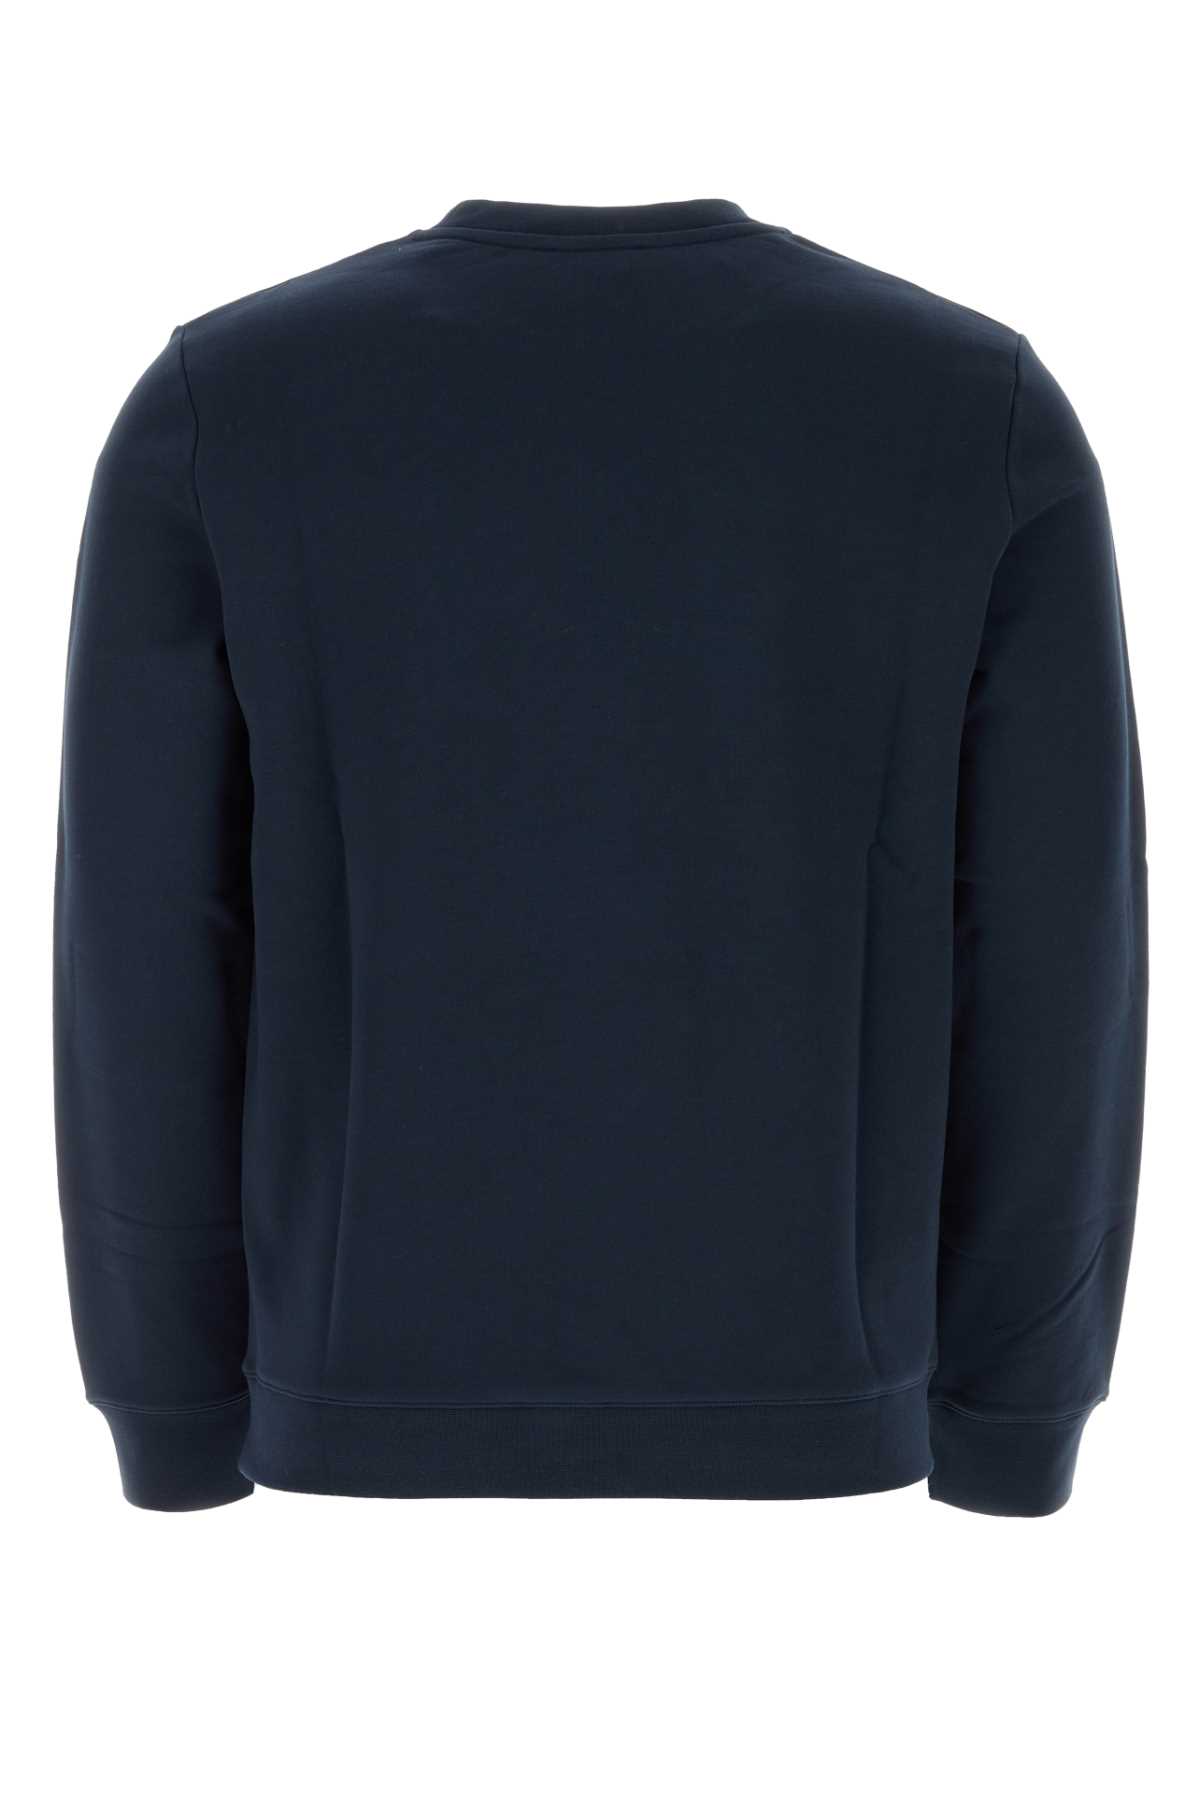 Shop Apc Navy Blue Cotton Sweatshirt In Iaj